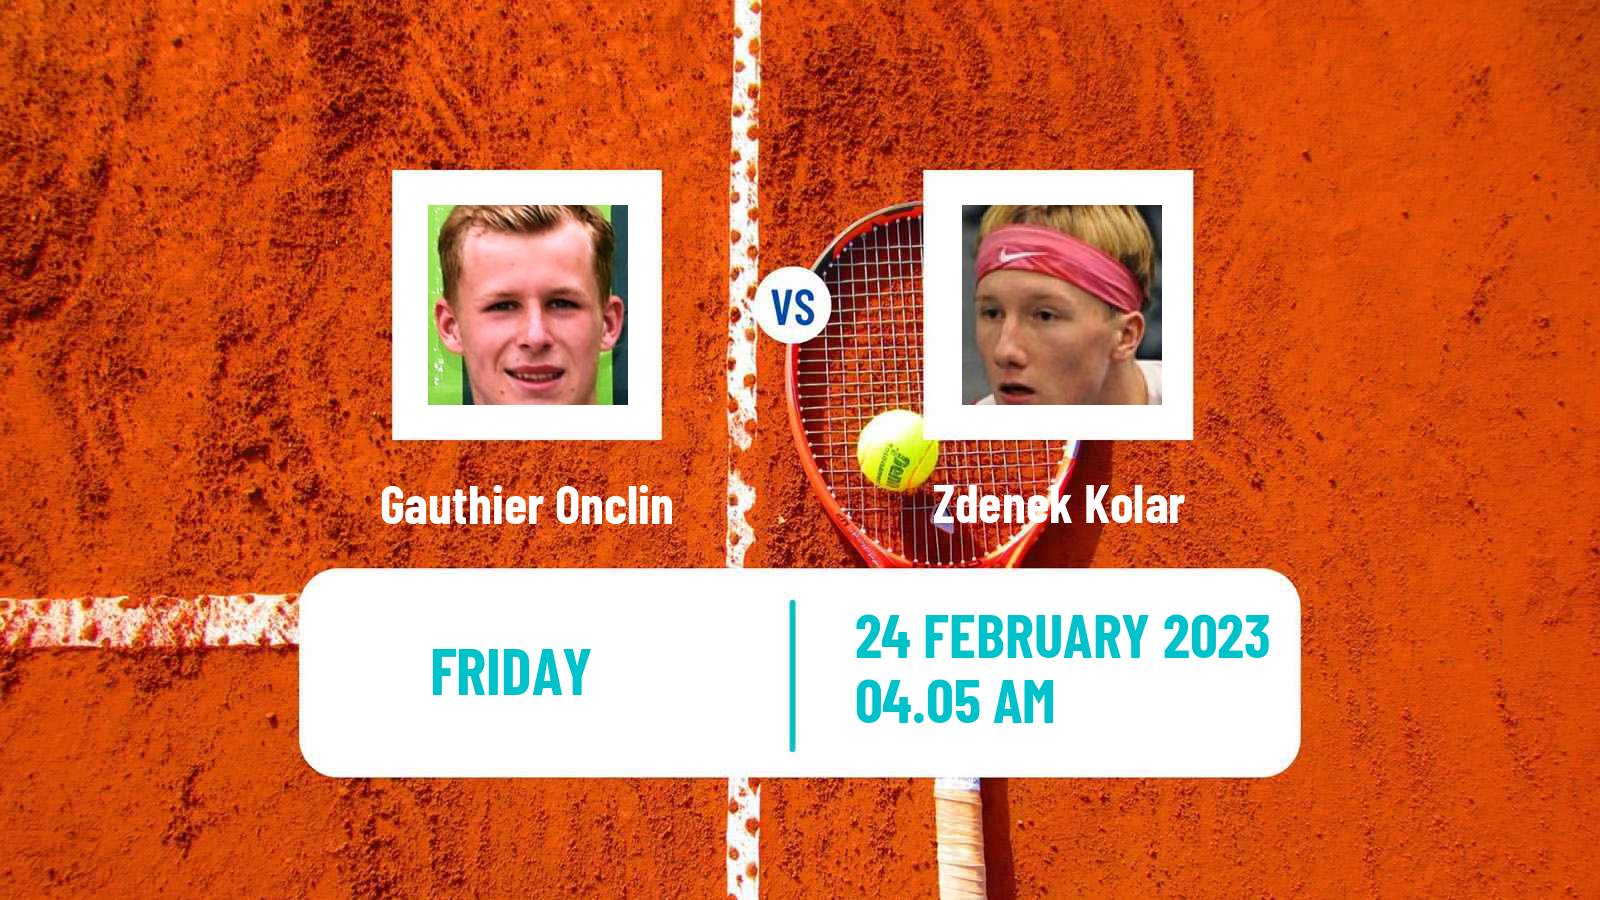 Tennis ATP Challenger Gauthier Onclin - Zdenek Kolar